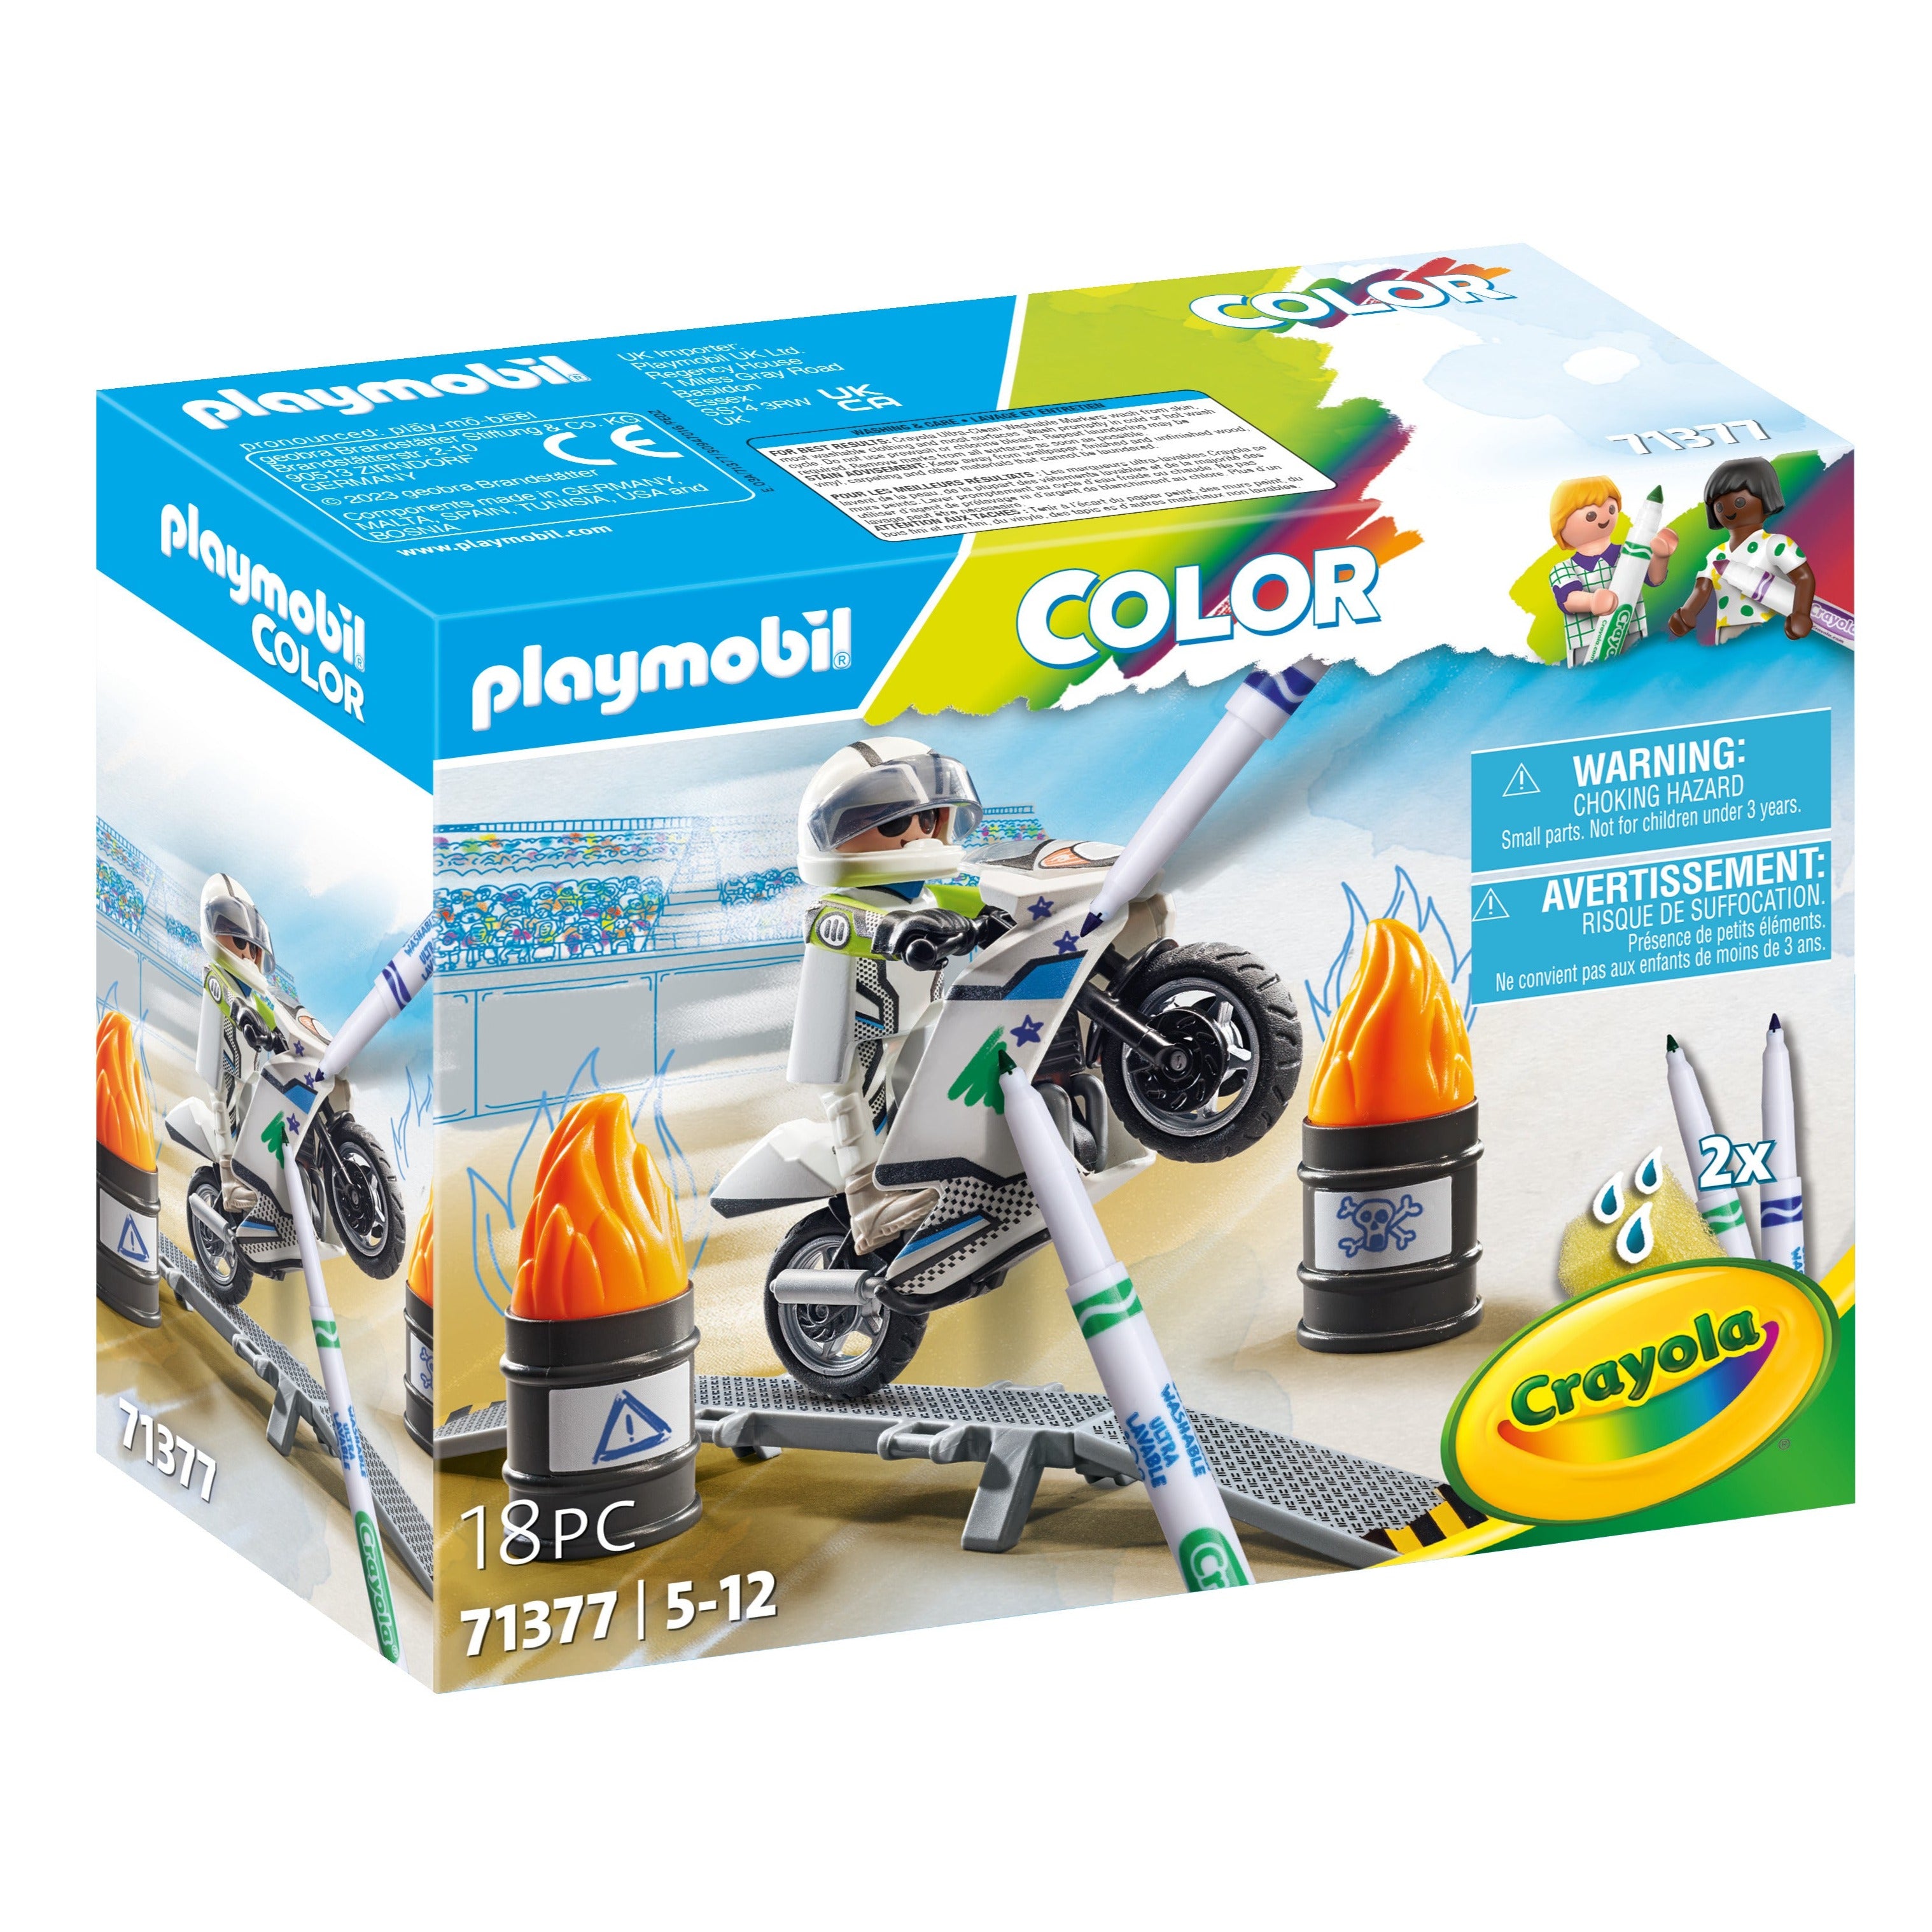 Playmobil: motocykl Color Playmobil x Crayola